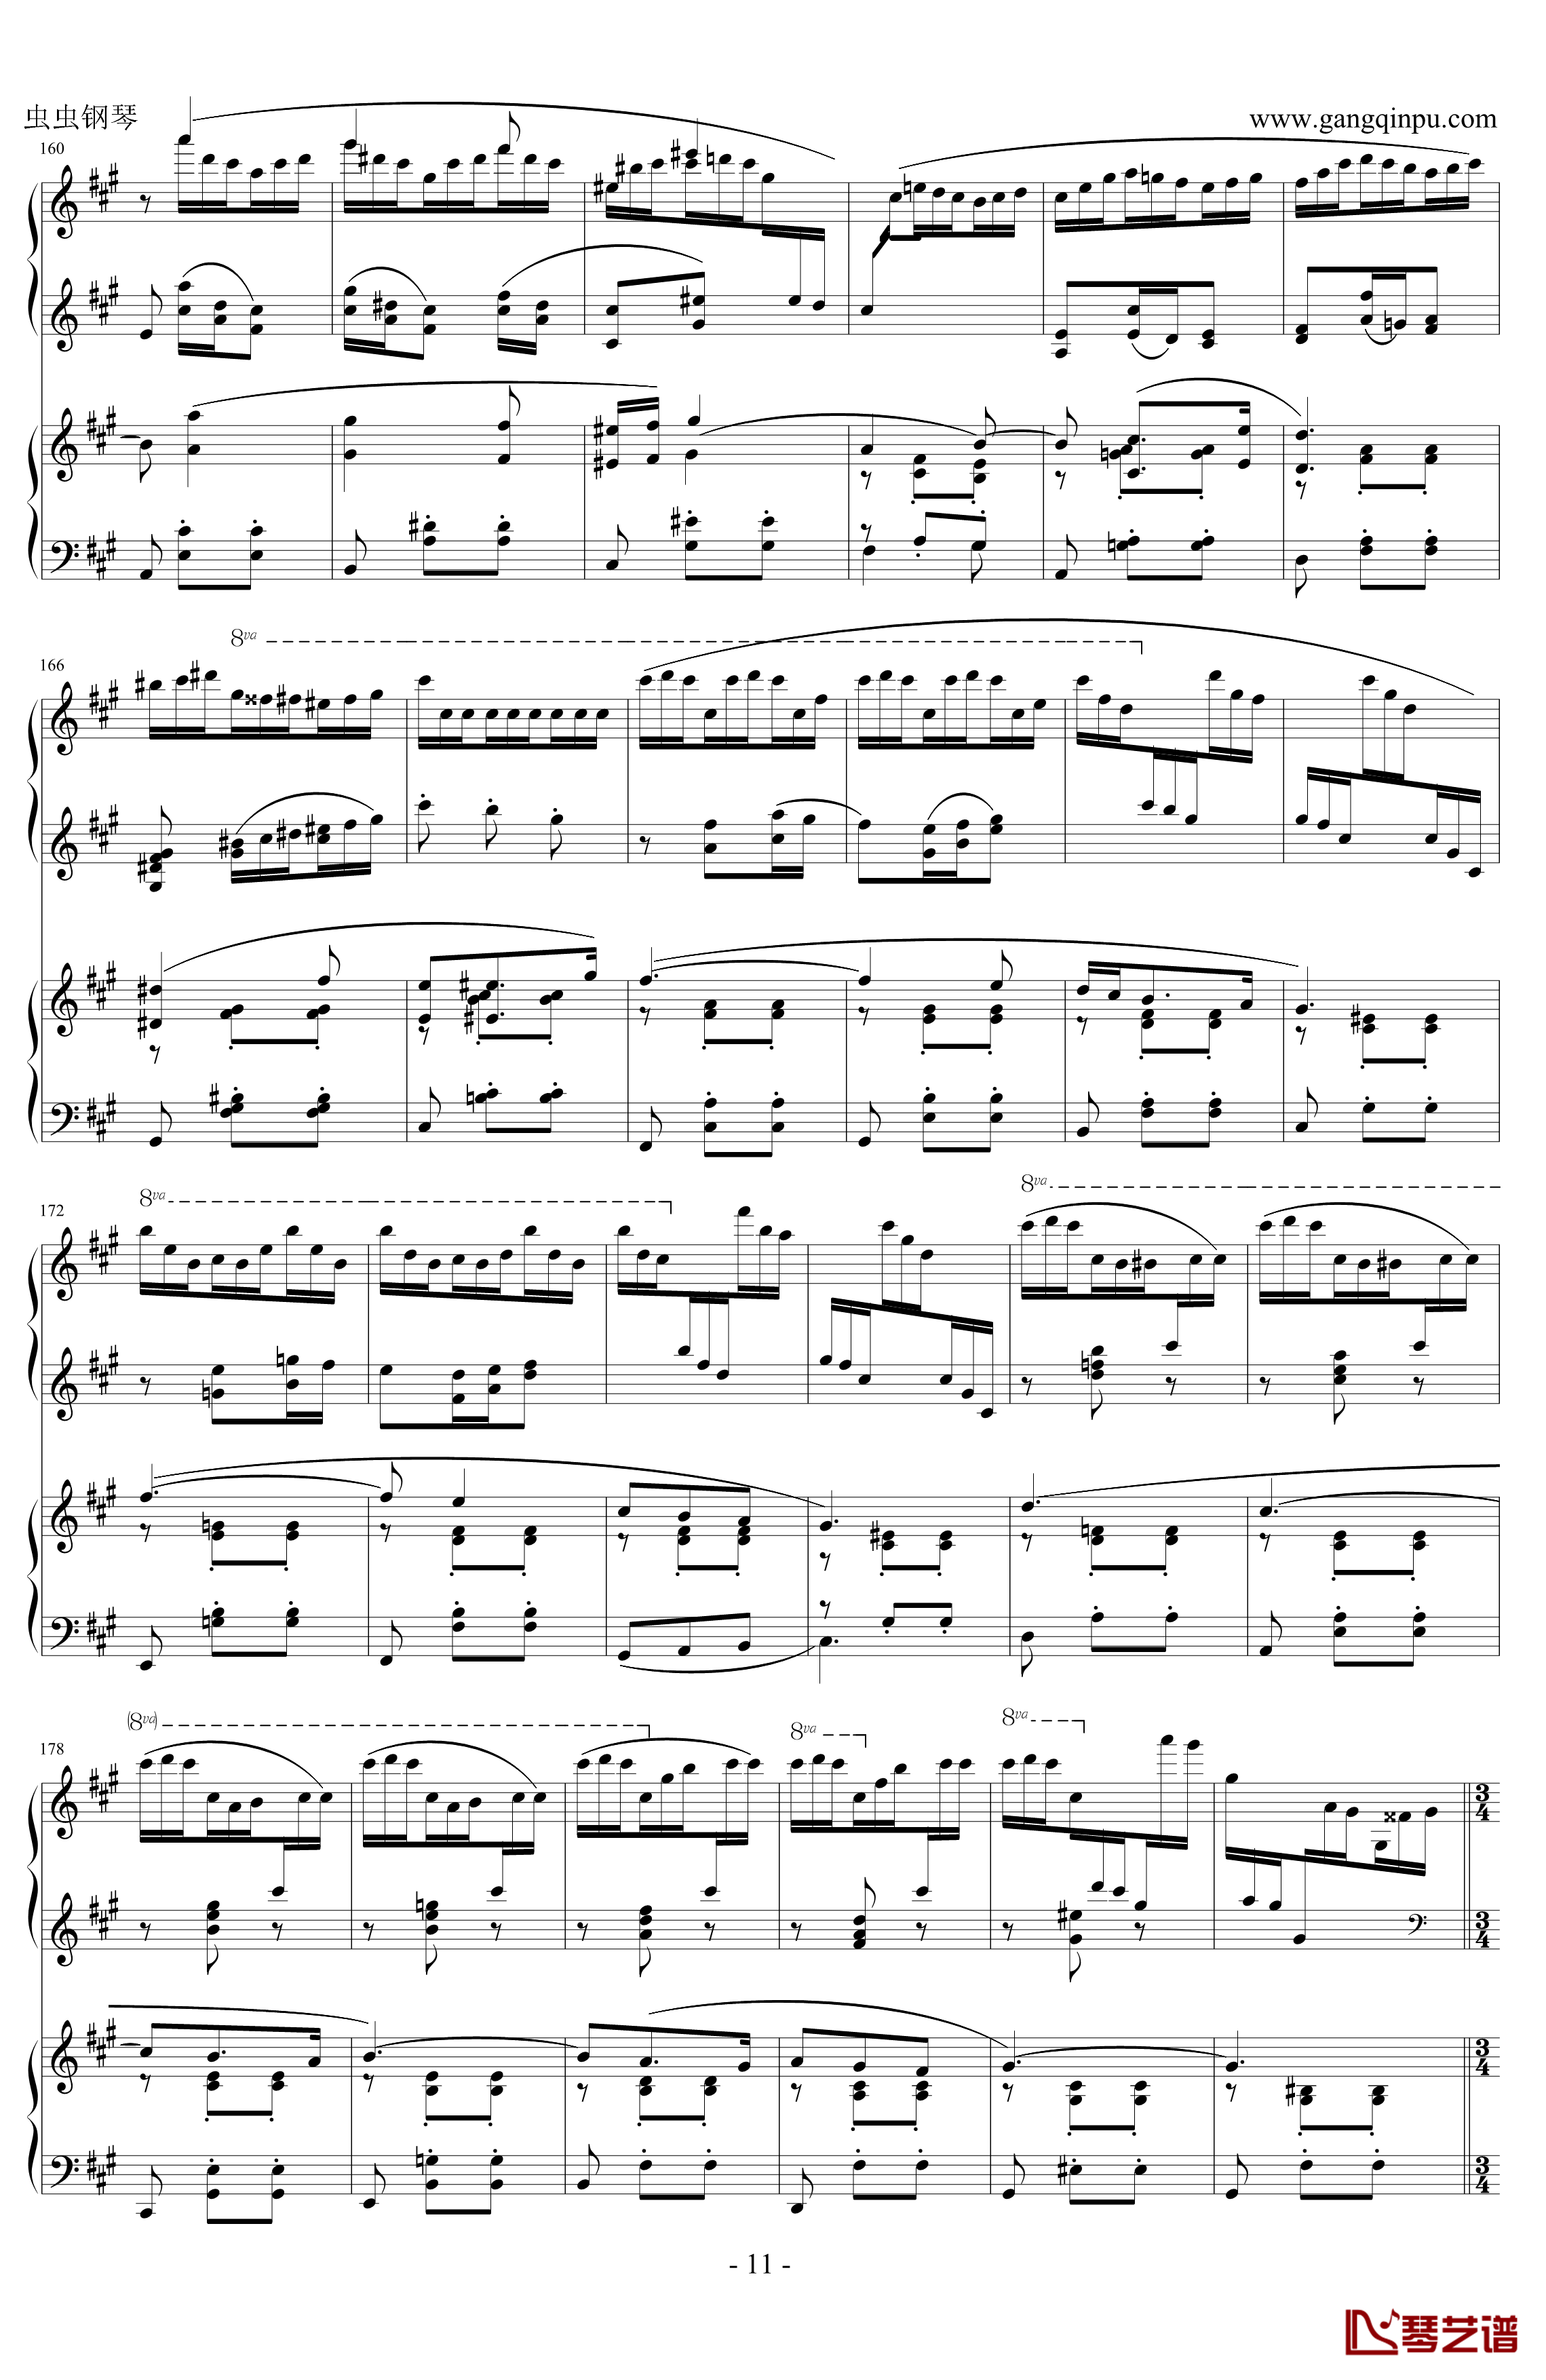 拉赫玛尼诺夫d小调第三钢琴协奏曲钢琴谱 第二乐章-拉赫马尼若夫11